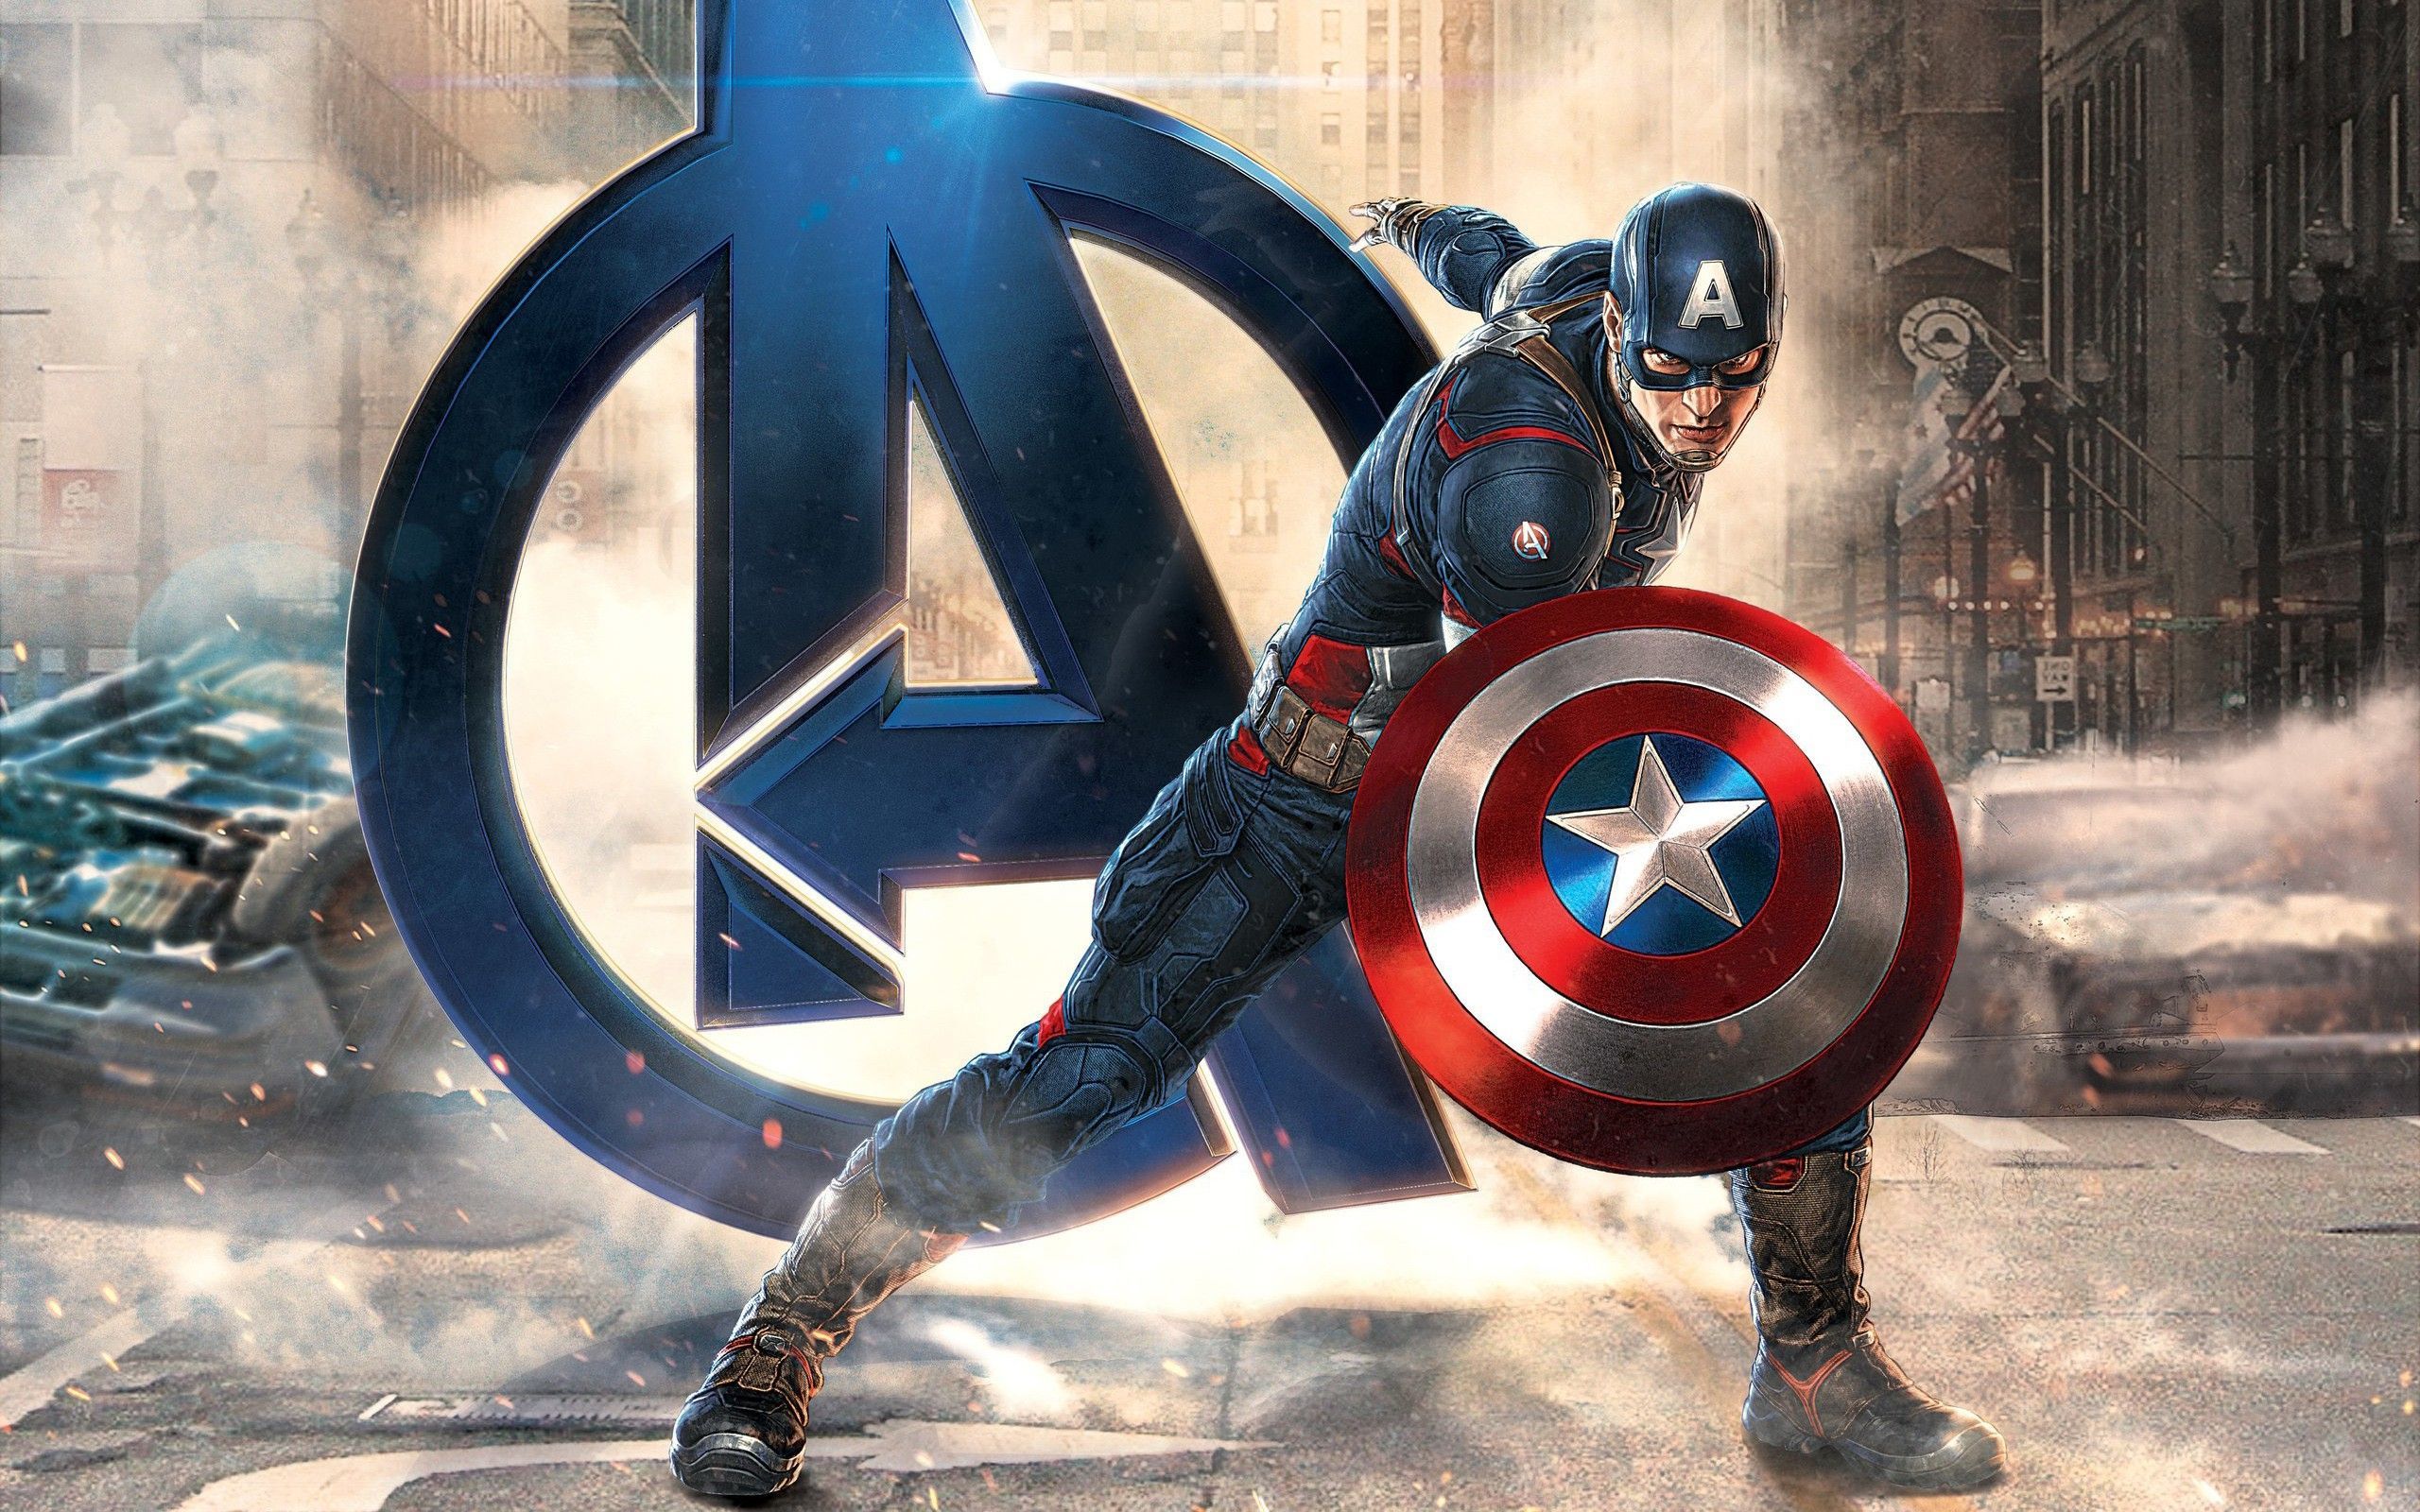 Fondos de Capitán América - Los mejores fondos gratuitos de Capitán América